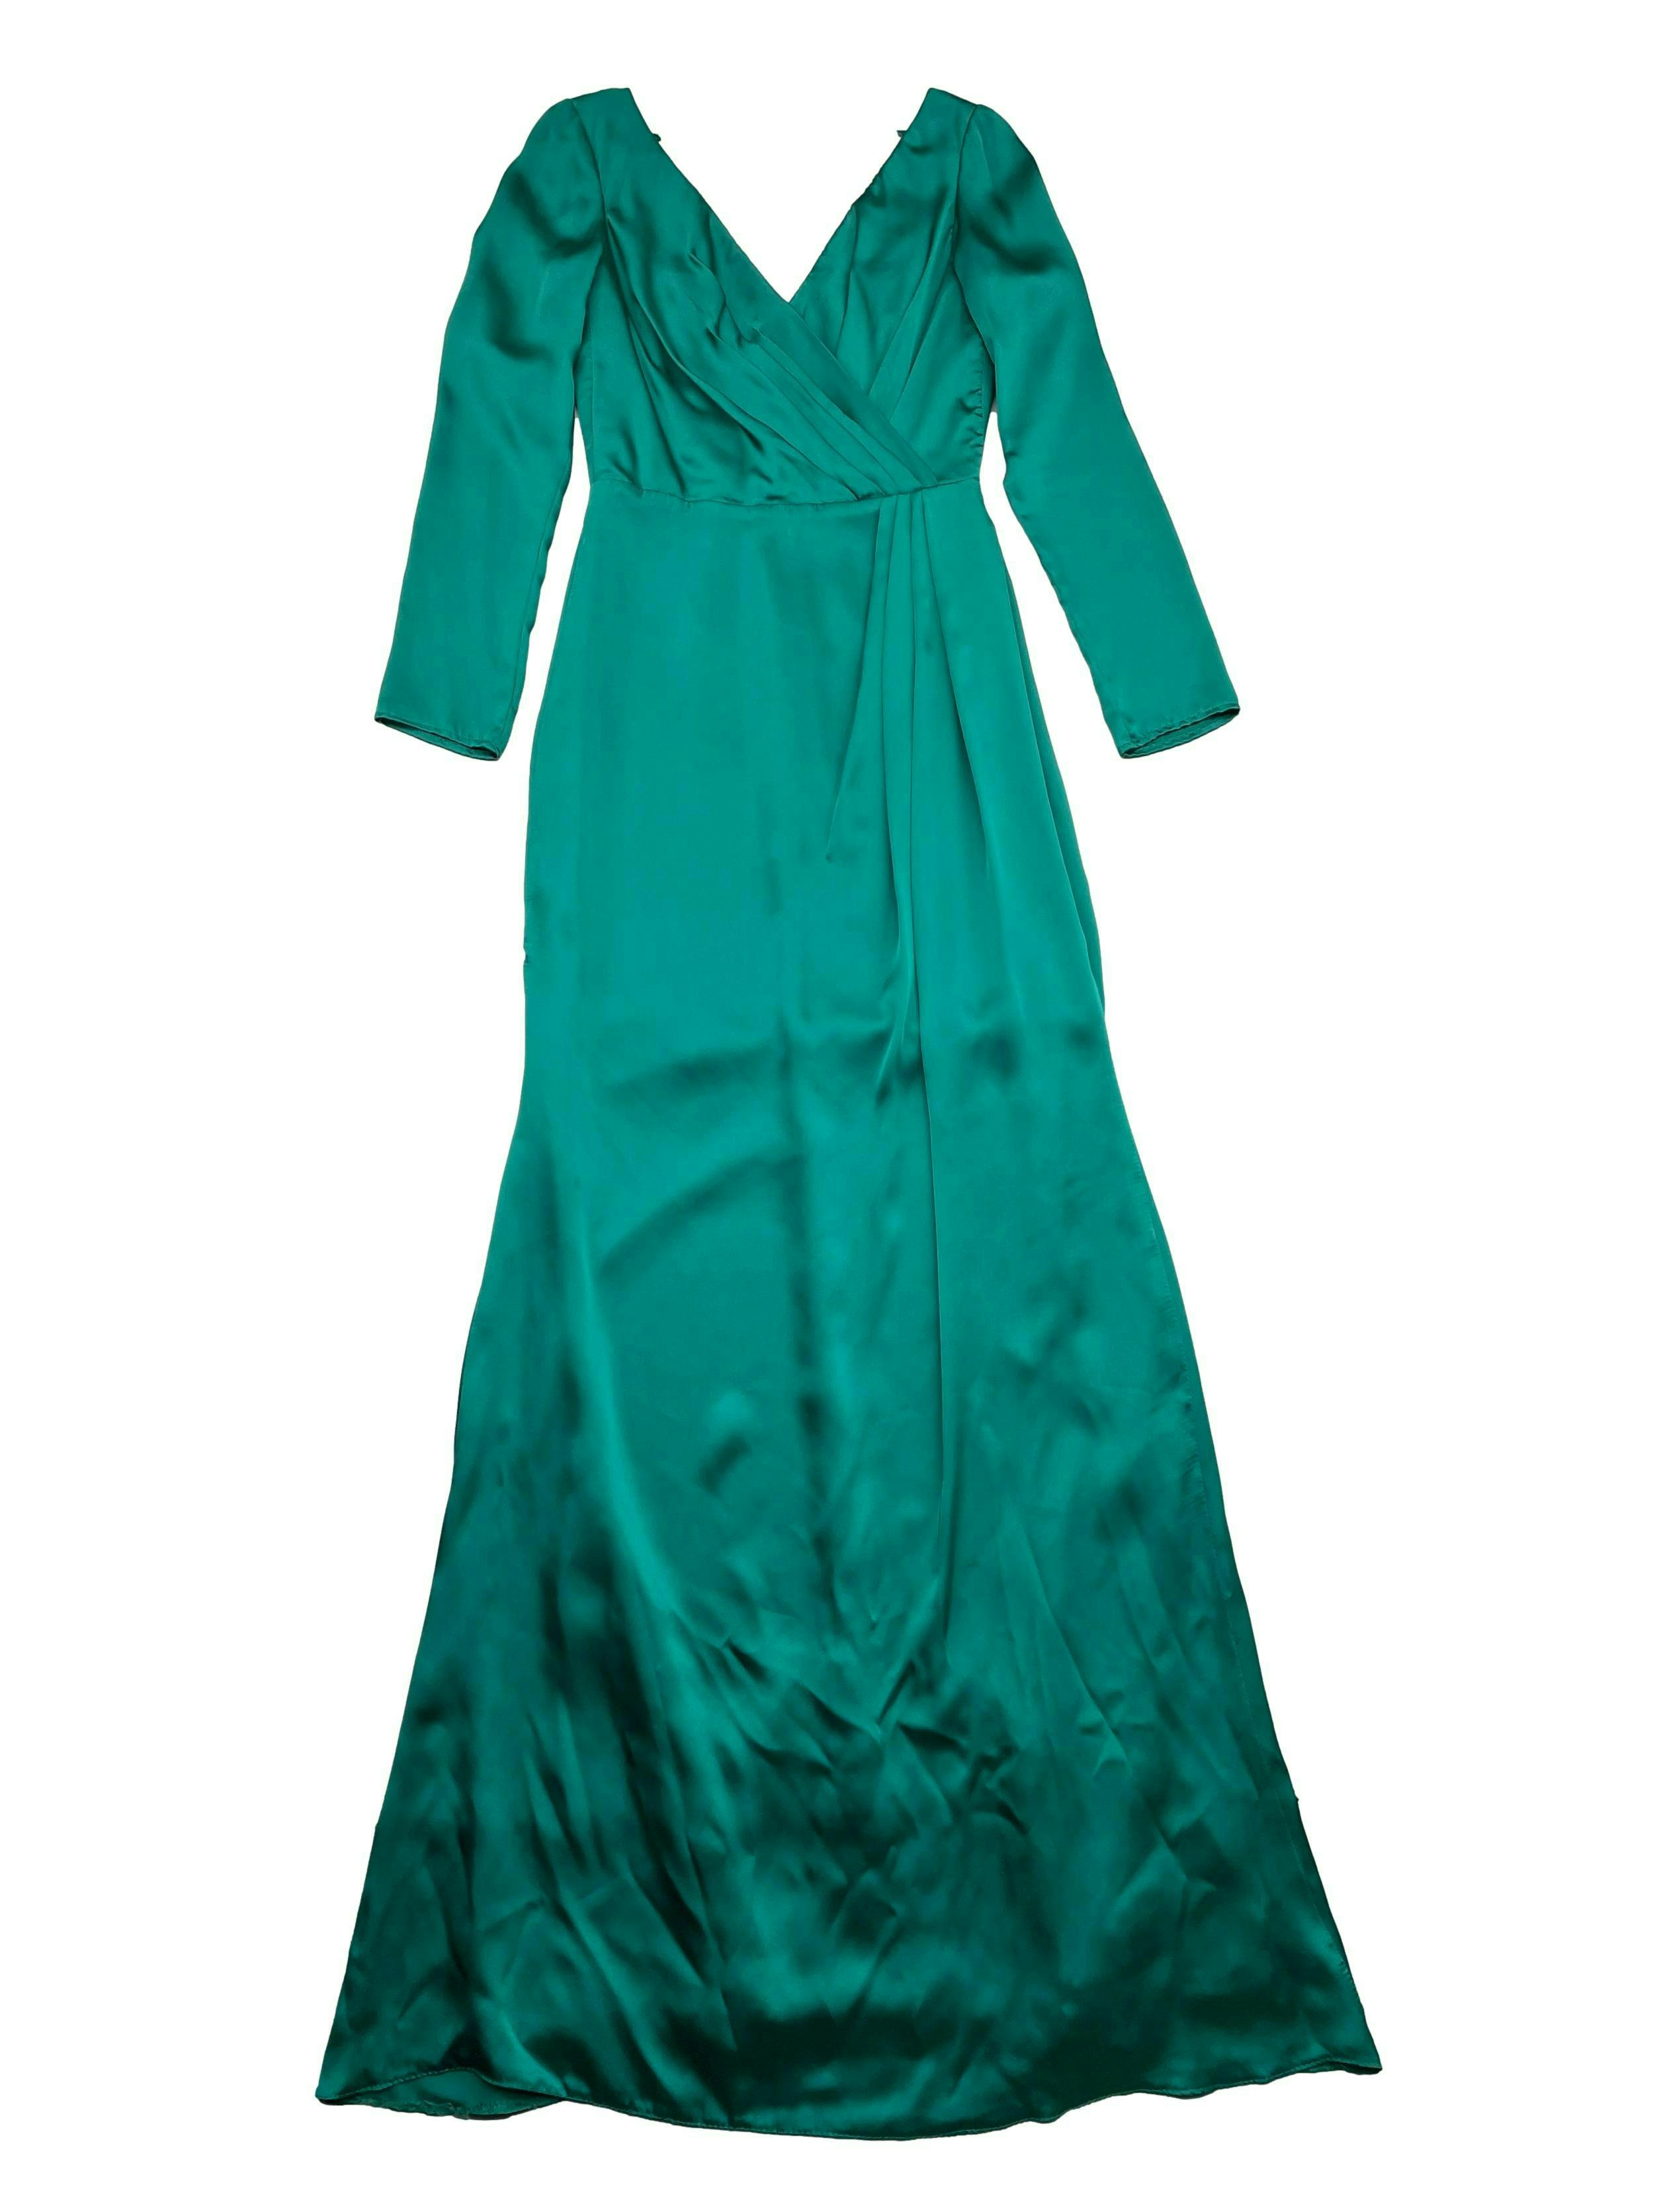 Vestido verde esmeralda de satén con forro, cruce y pliegues frontales, corte en cintura, escote en espalda con cinto y cierre invisible. Busto 88cm, Largo 155cm.